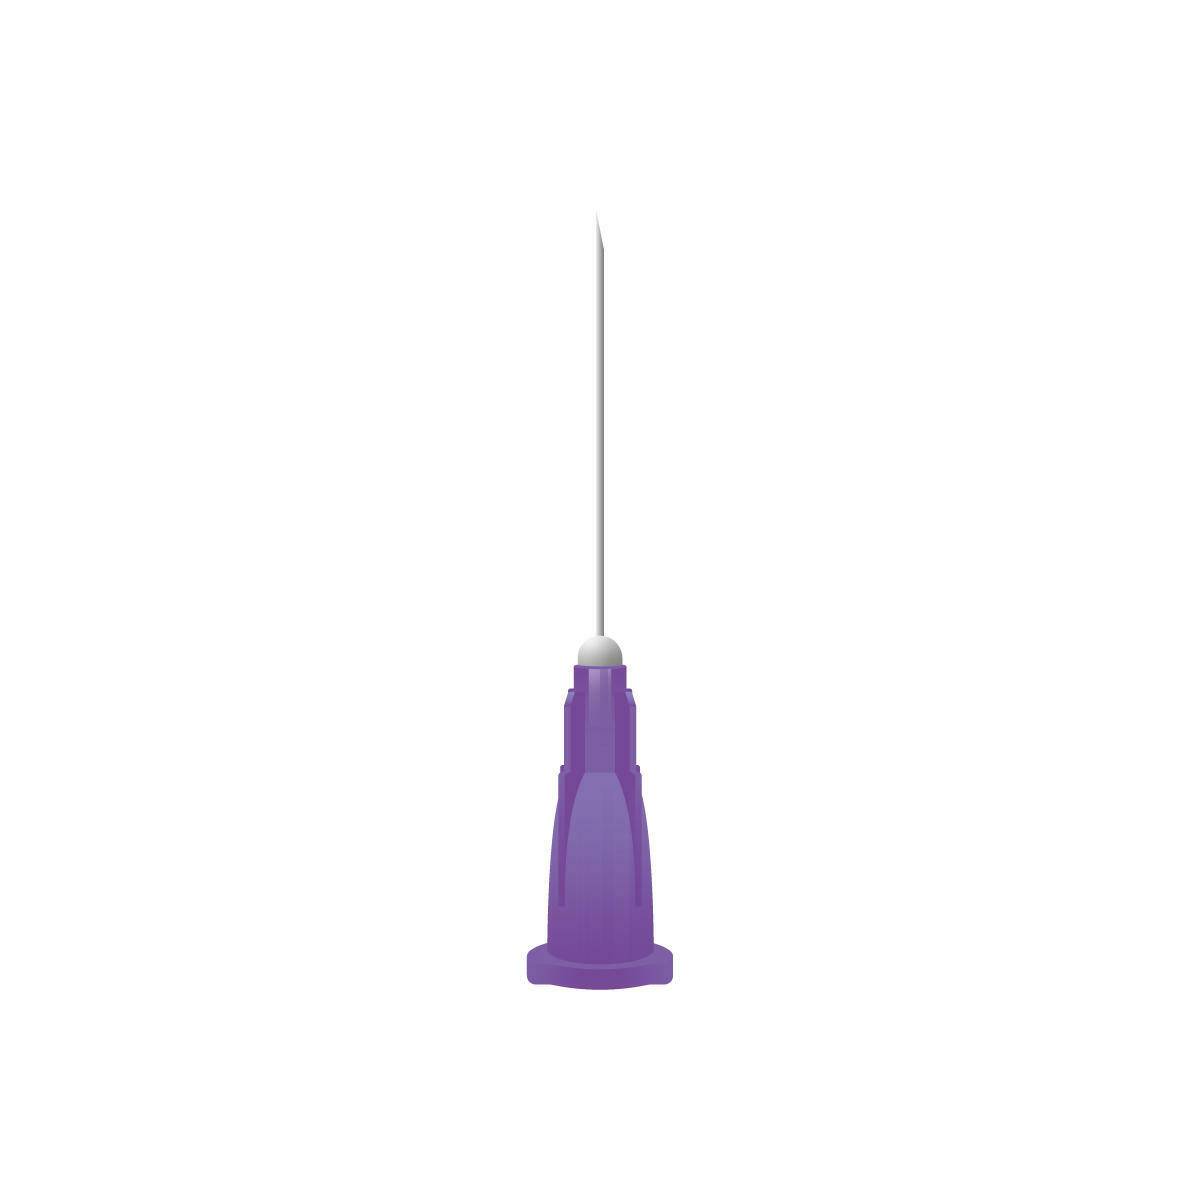 24g Purple 1 inch Unisharp Needles